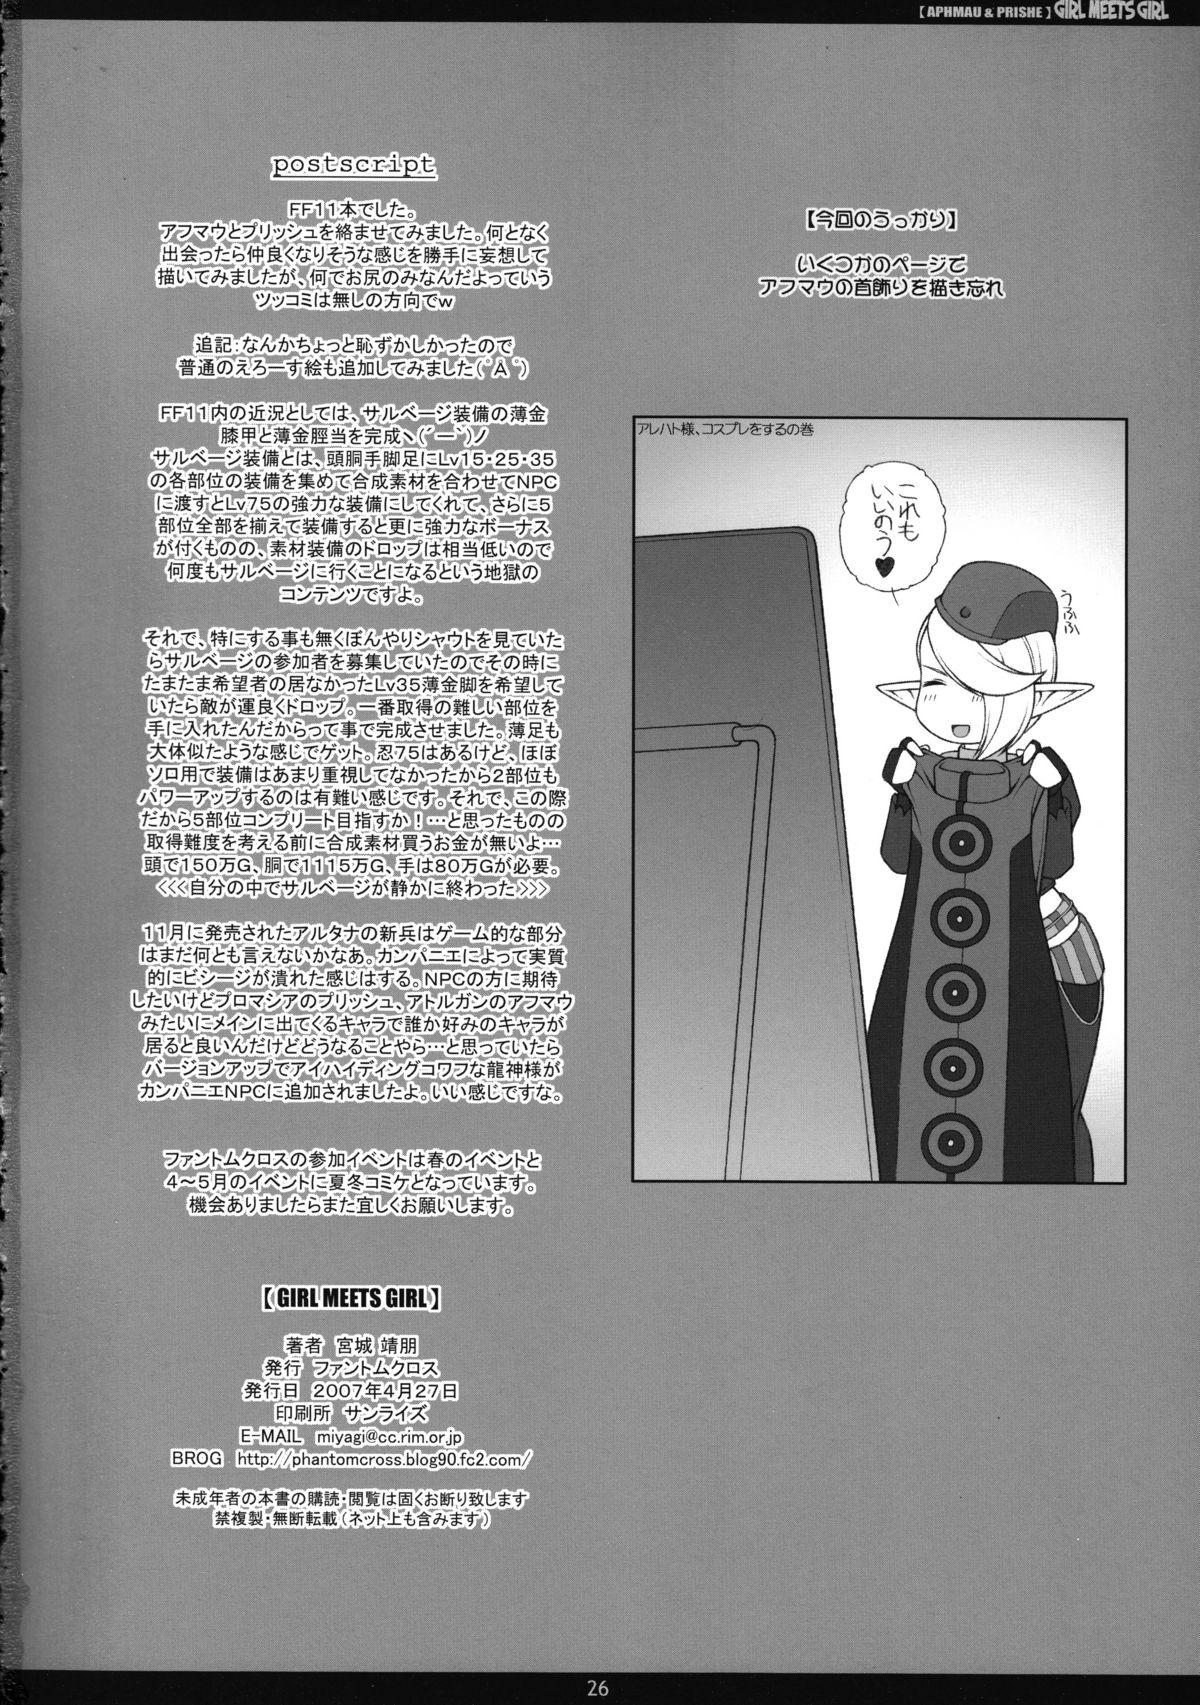 Futanari GIRL MEETS GIRL - Final fantasy xi Feet - Page 25